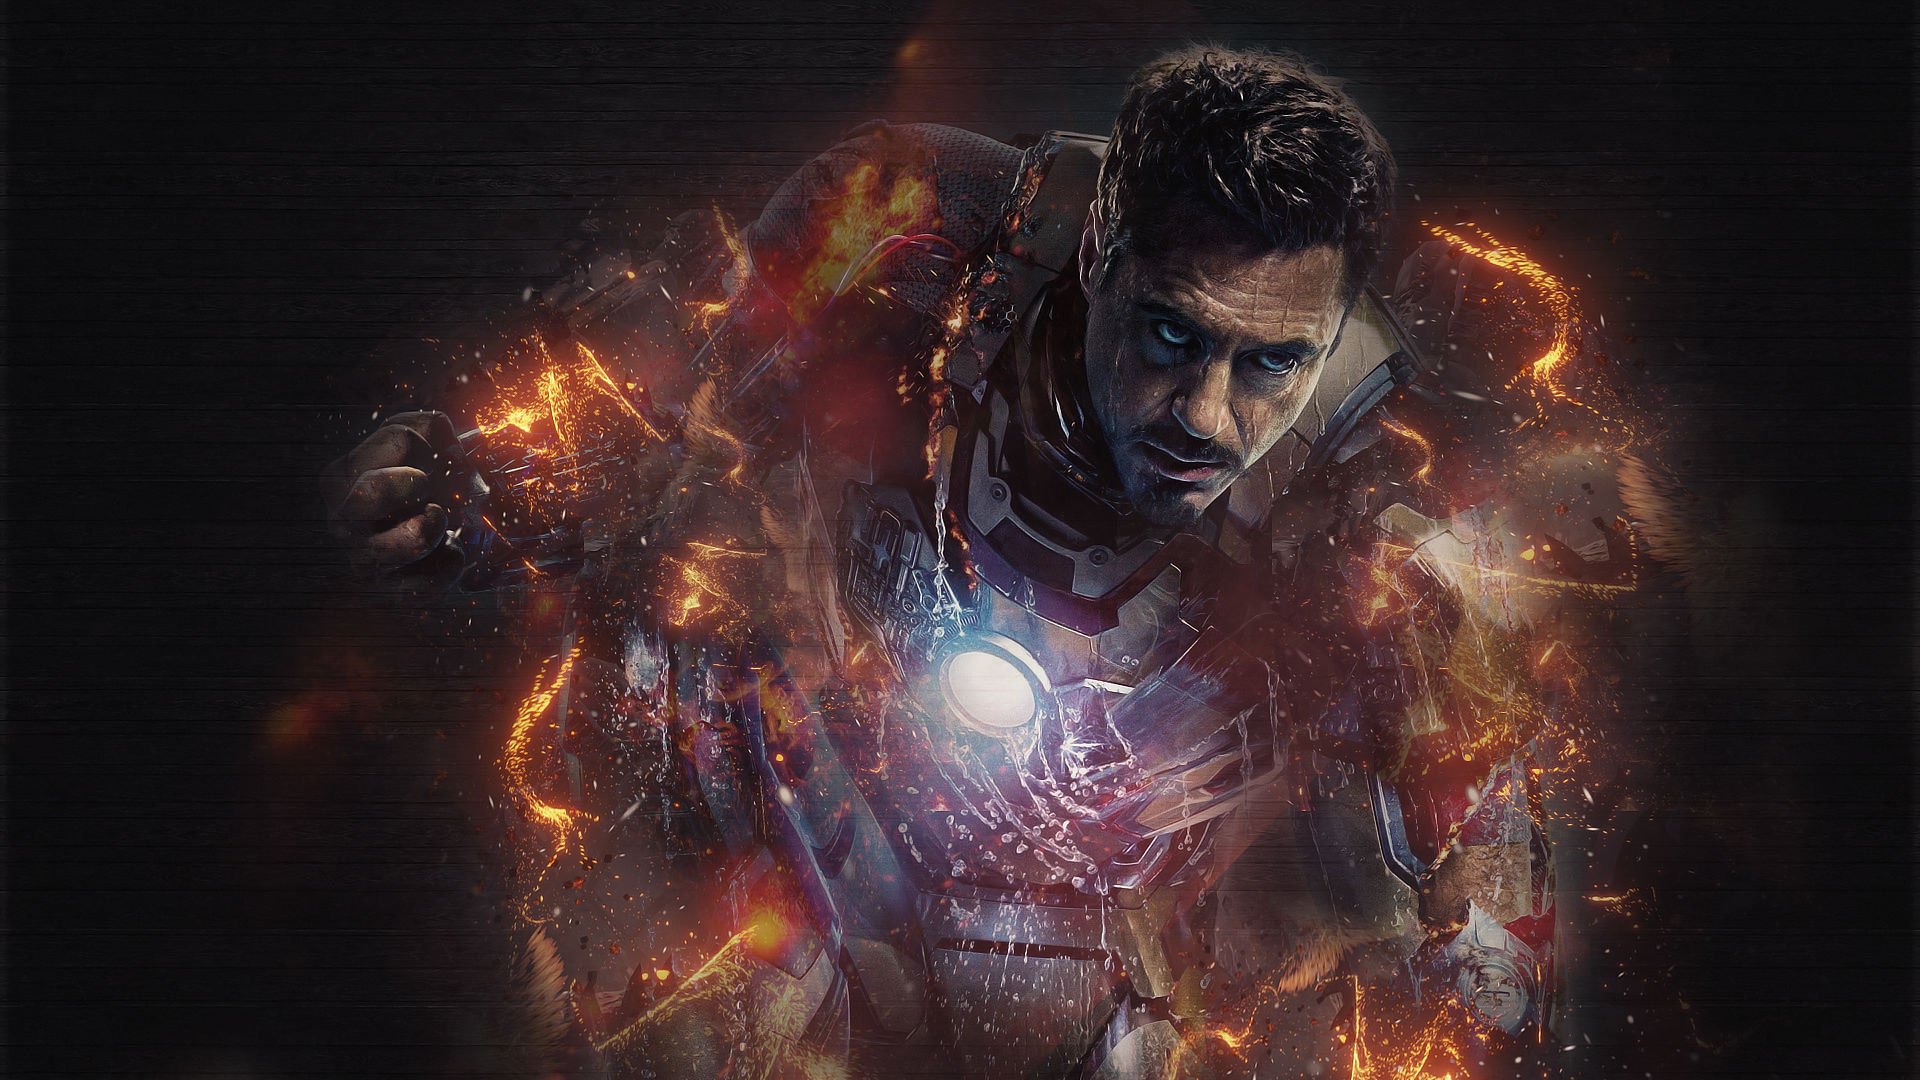 Iron Man Images Free Download 